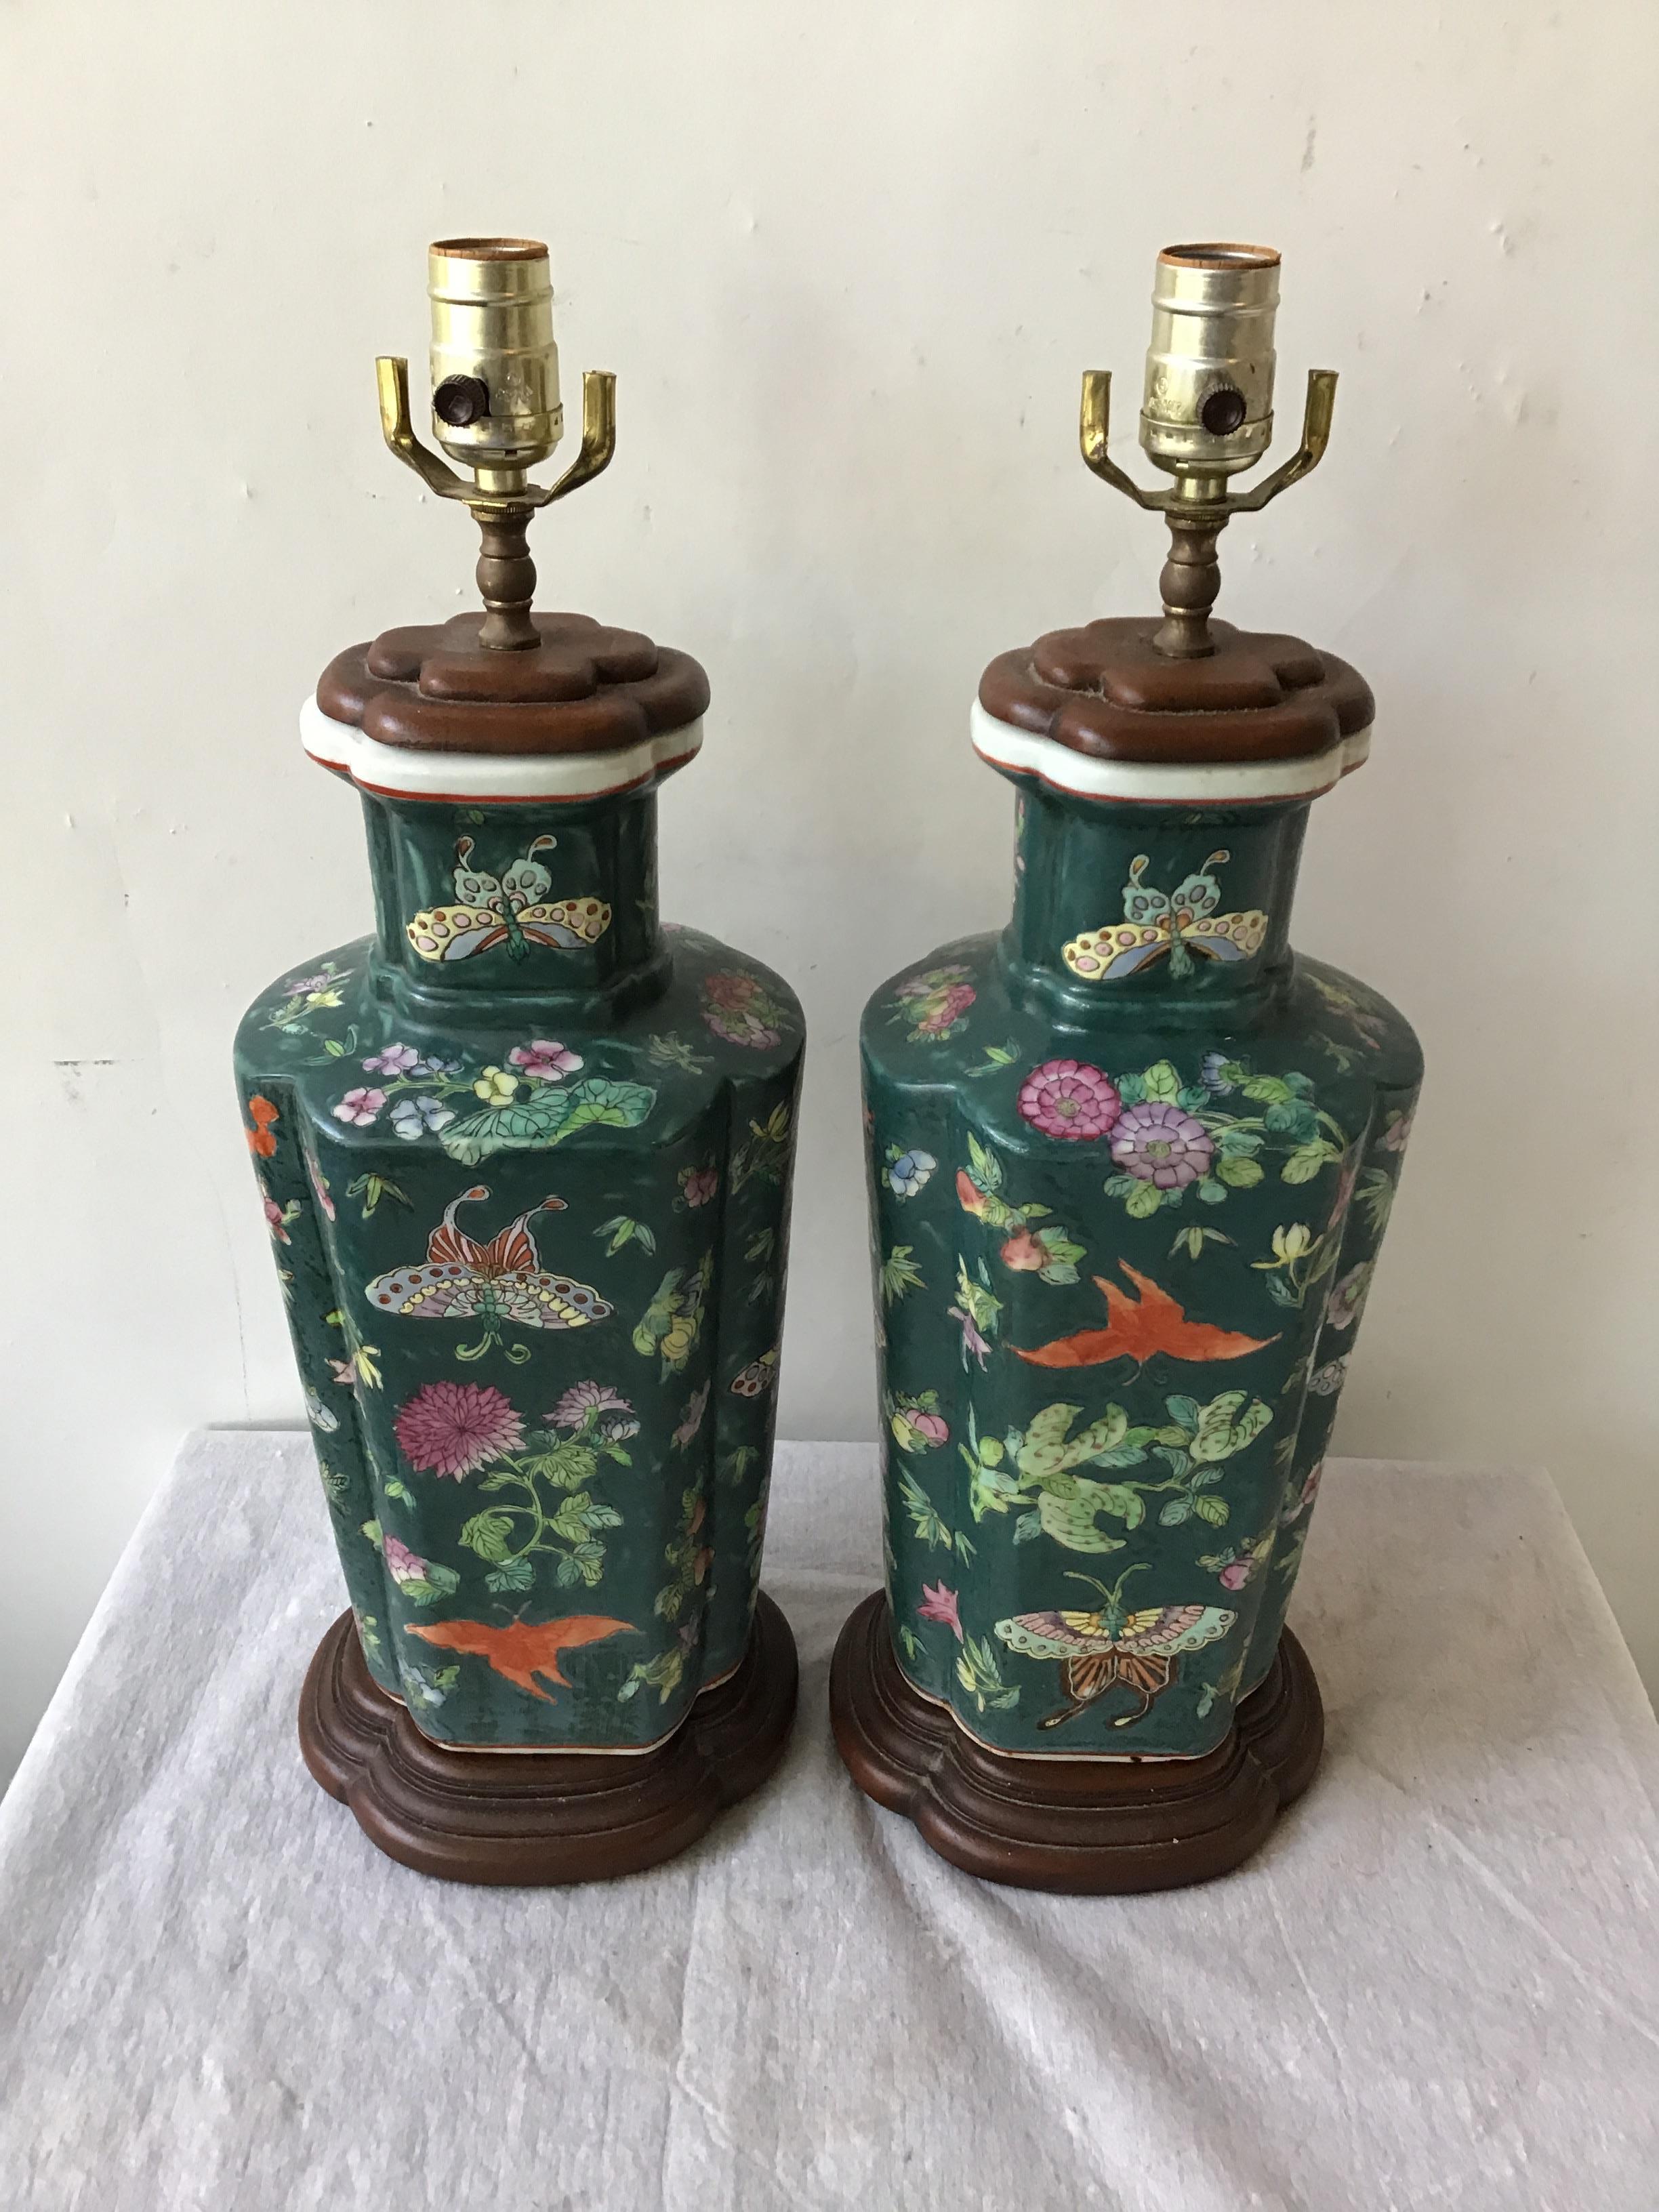 Pair of 1970s Asian ceramic ginger jar lamps.